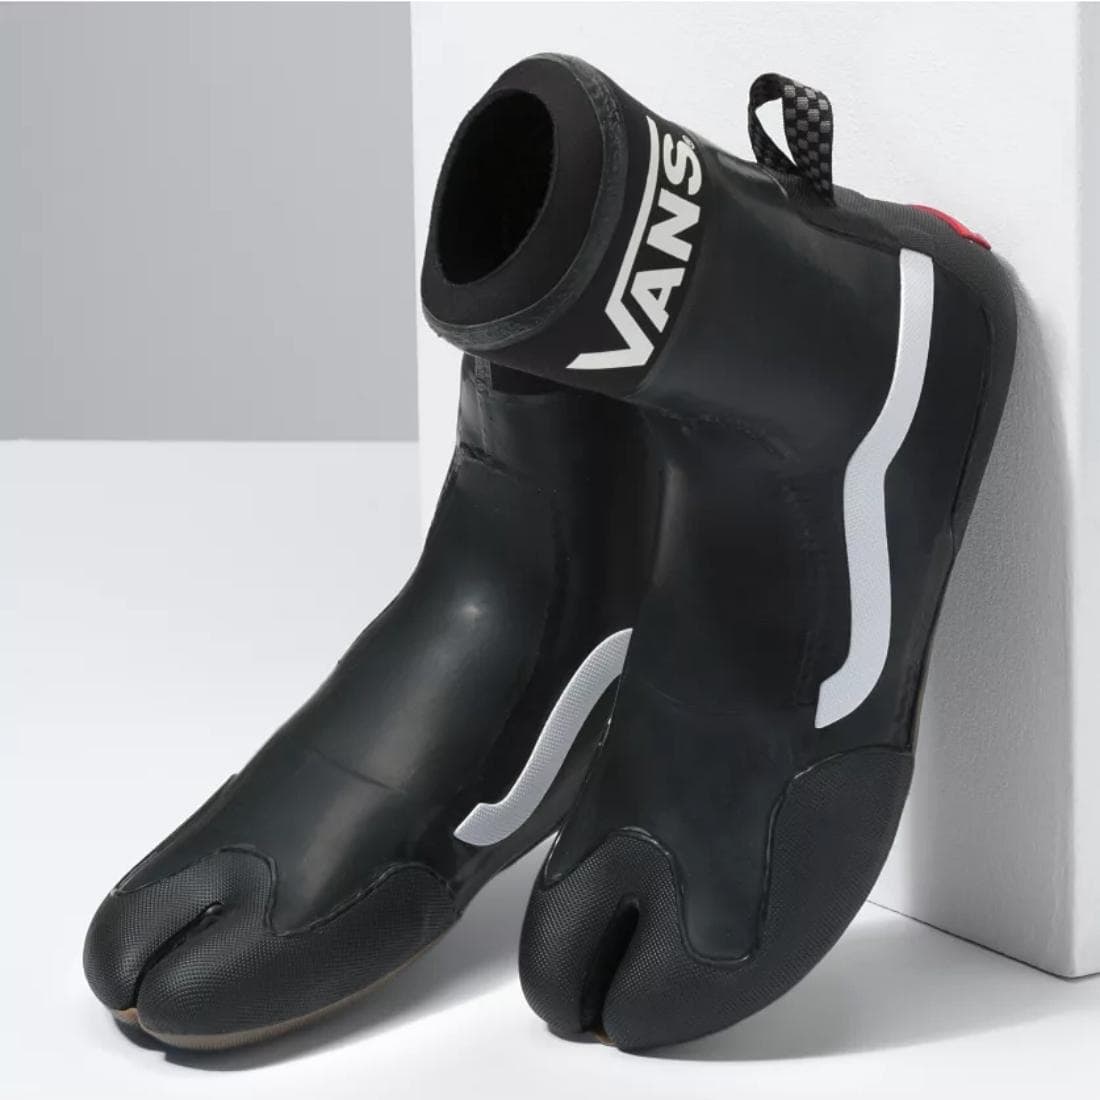 Vans 3mm Split Toe High Wetsuit Surf Boot - Black/Black - Reef Boots by Vans